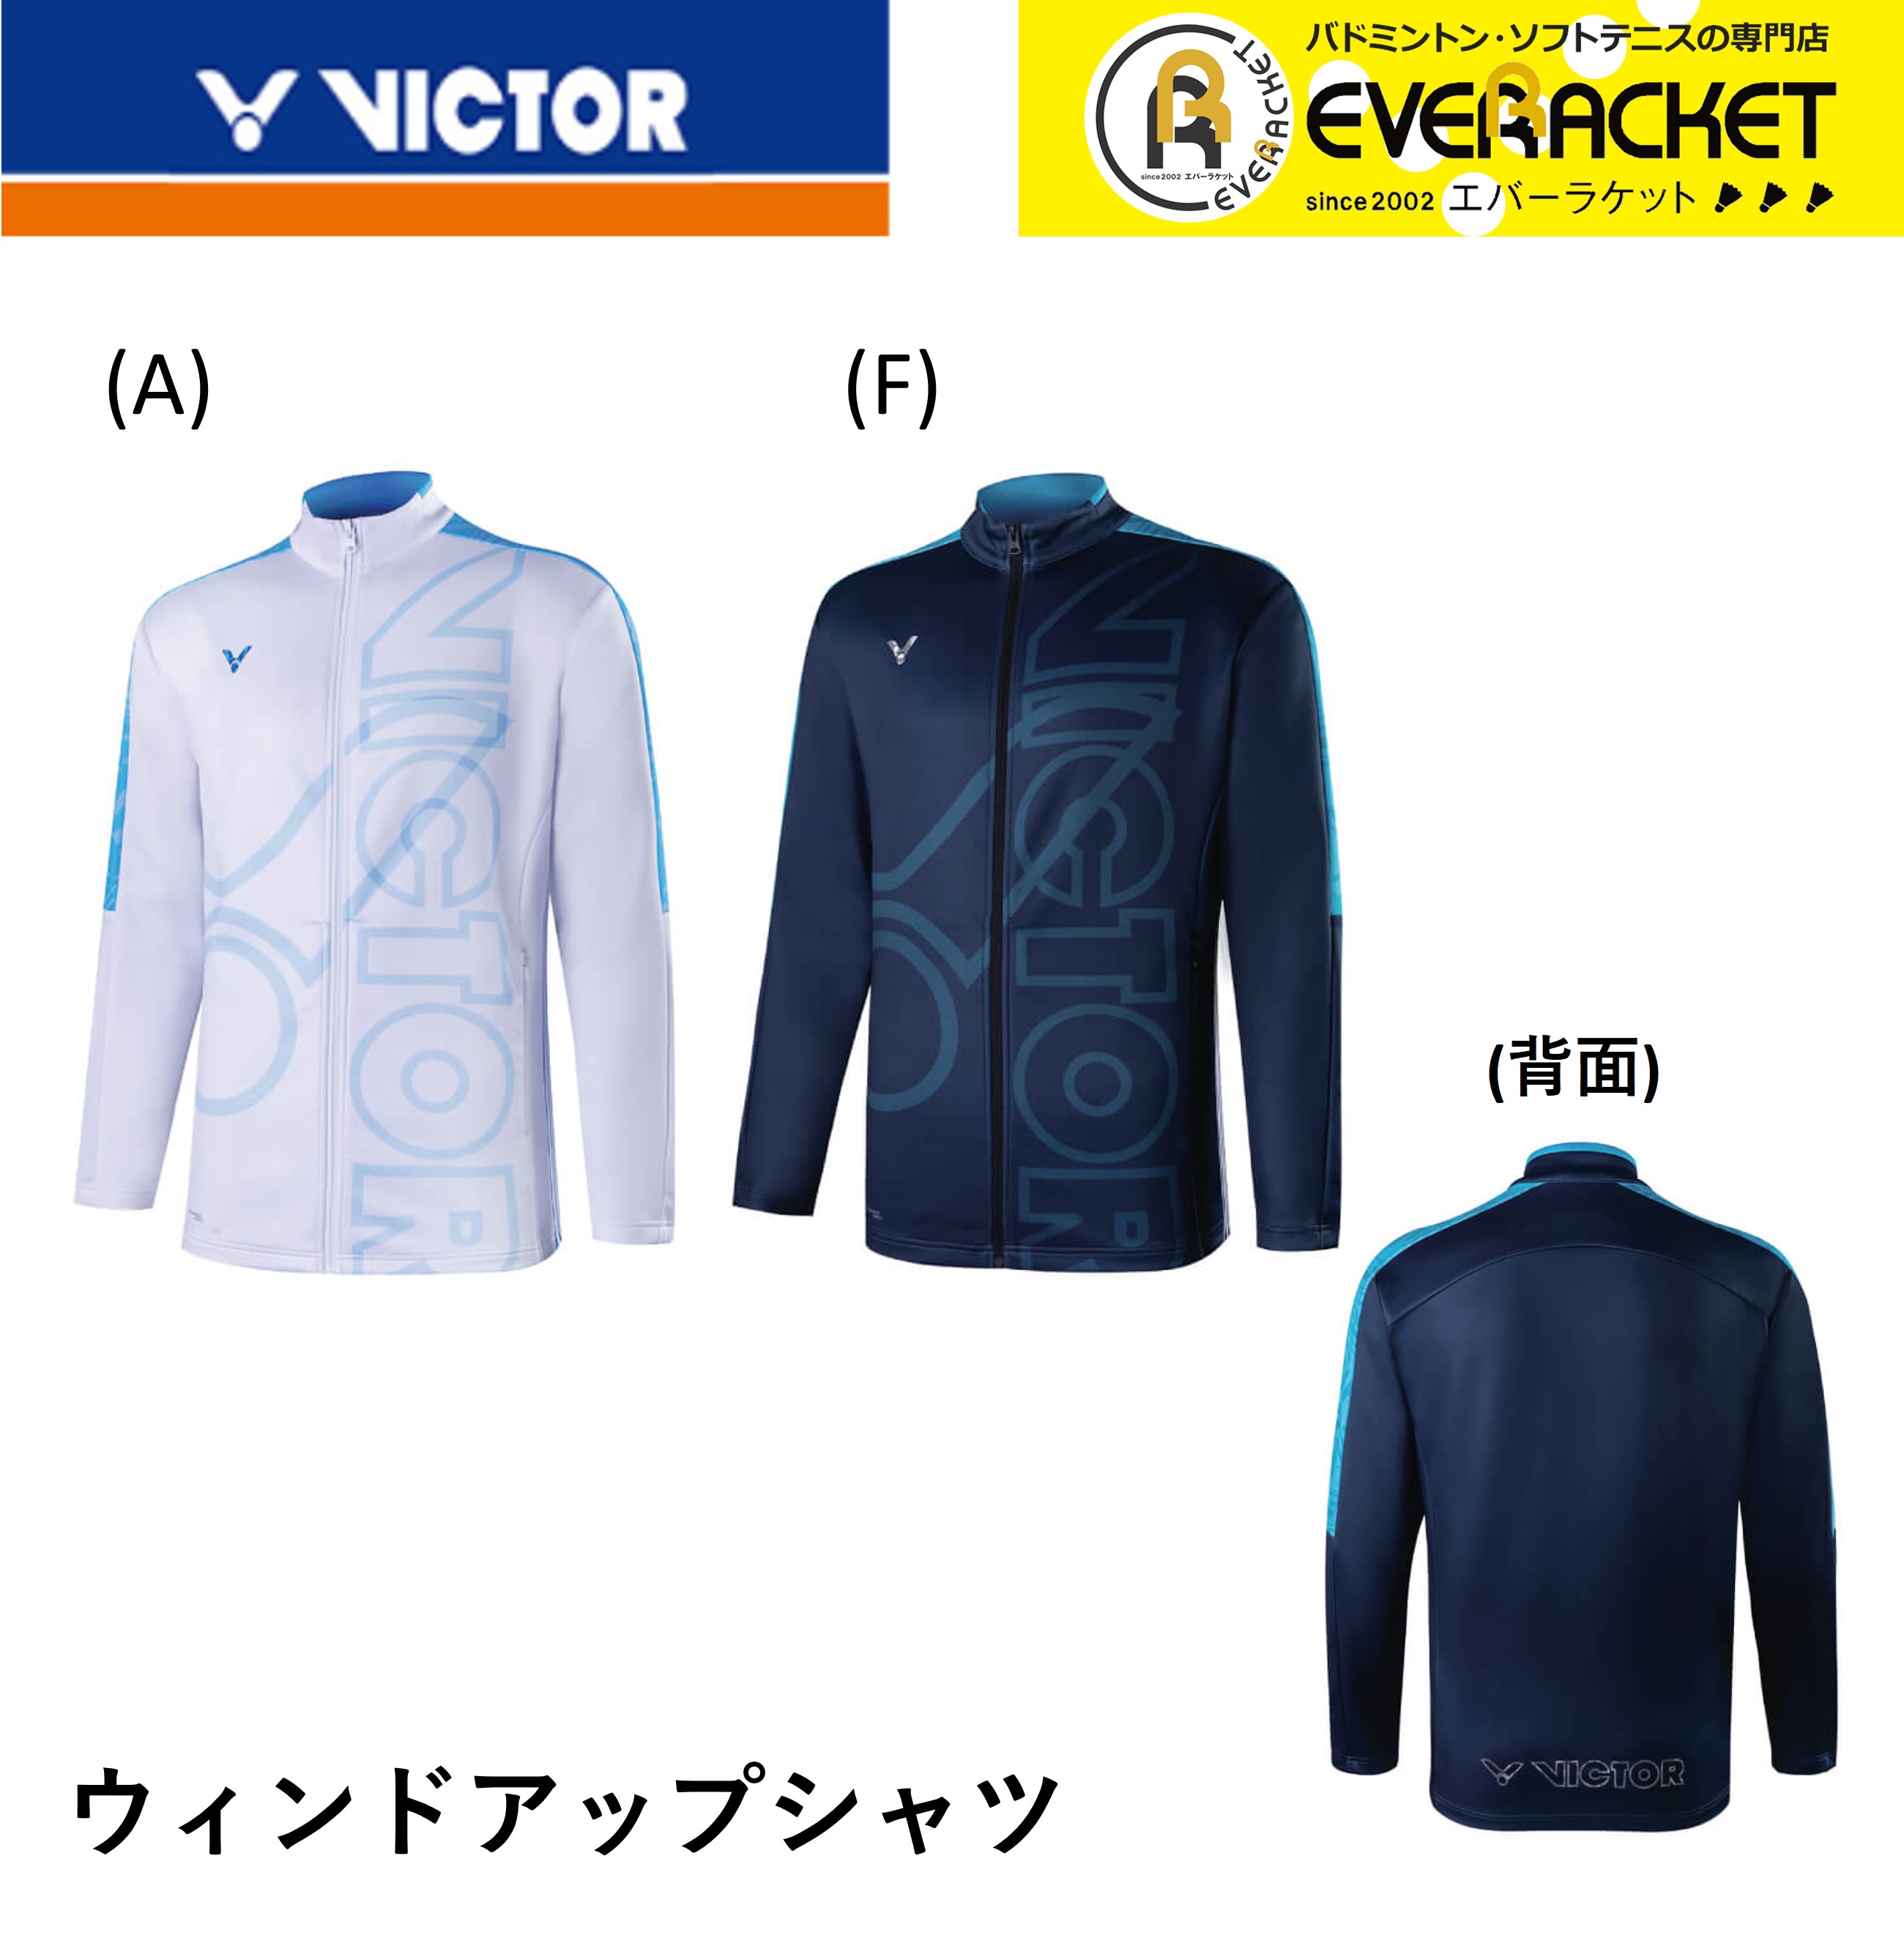 魅力的な ビクター VICTOR ウエア ユニウィンドアップシャツ J-25600 